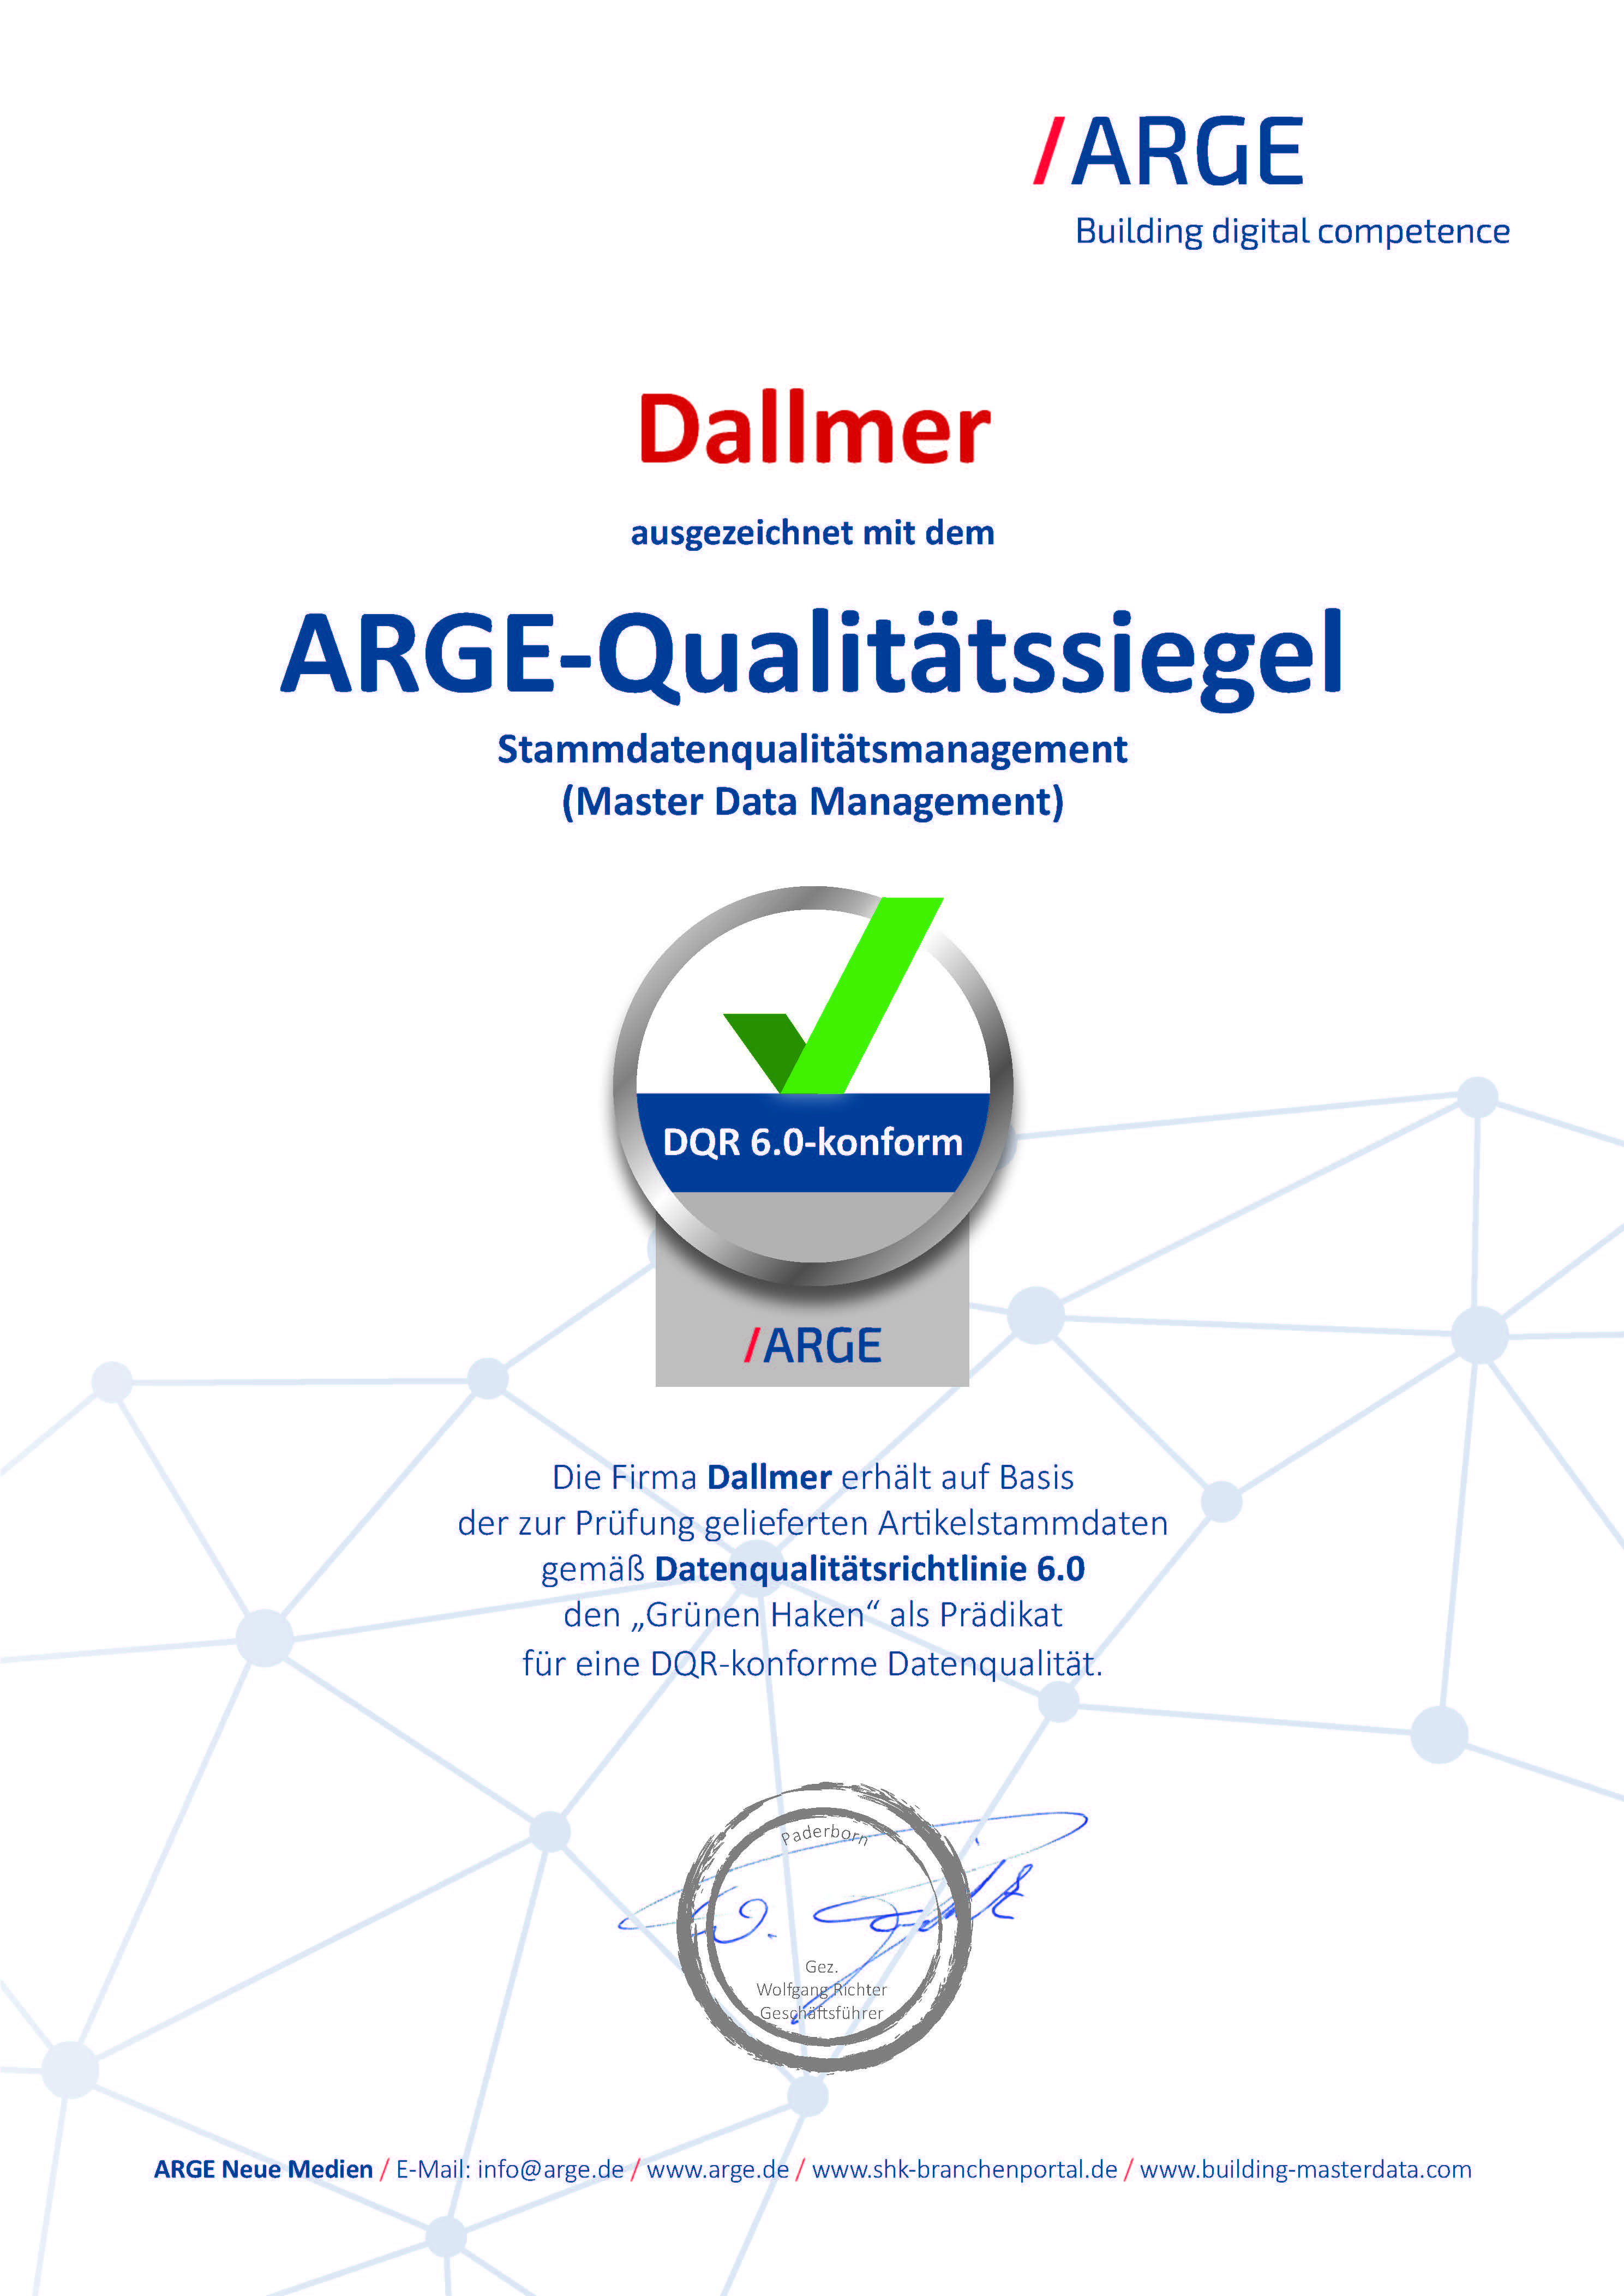 Entwässerungsspezialist Dallmer ist für seine optimale Datenqualität der Artikelstammdaten mit dem ARGE-Qualitätssiegel ausgezeichnet worden. Foto: Dallmer GmbH + Co. KG